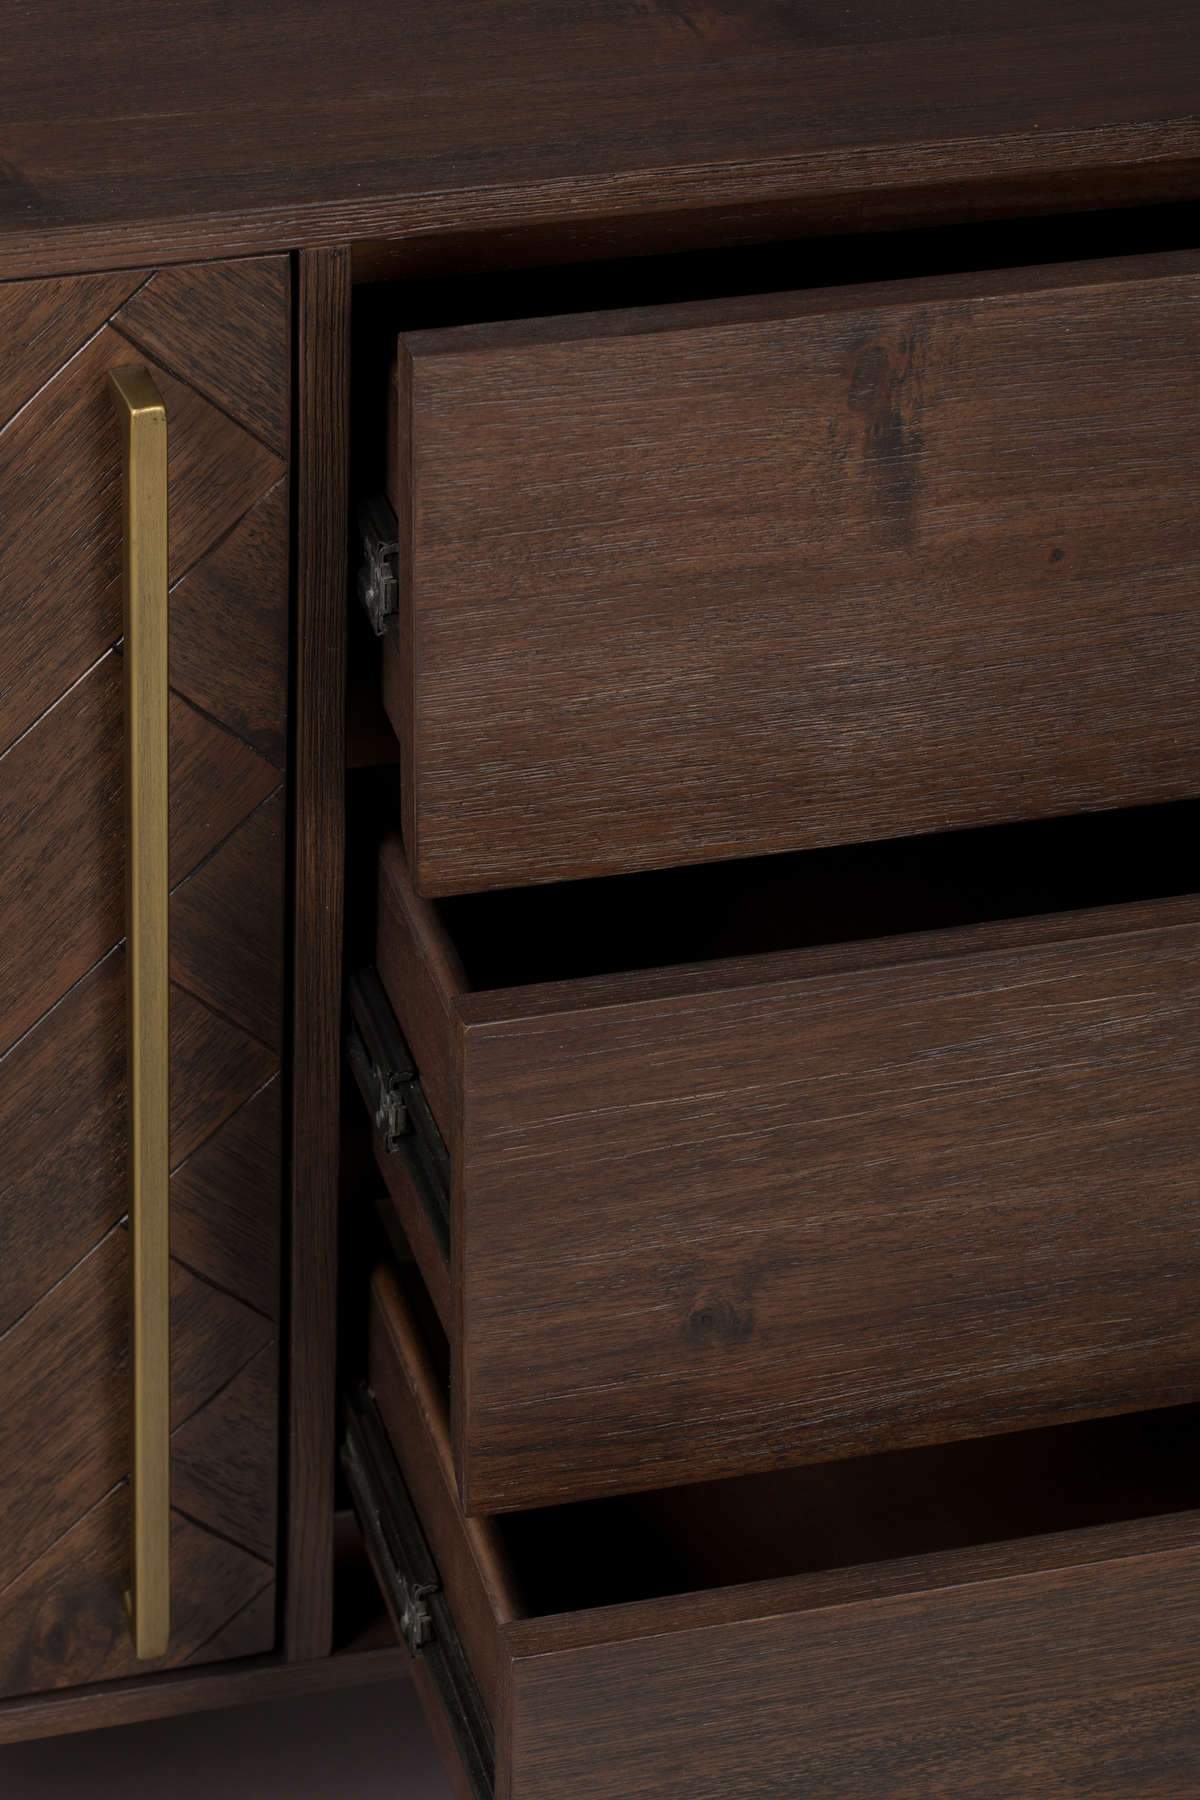 CLASS chest of drawers acacia wood, Dutchbone, Eye on Design